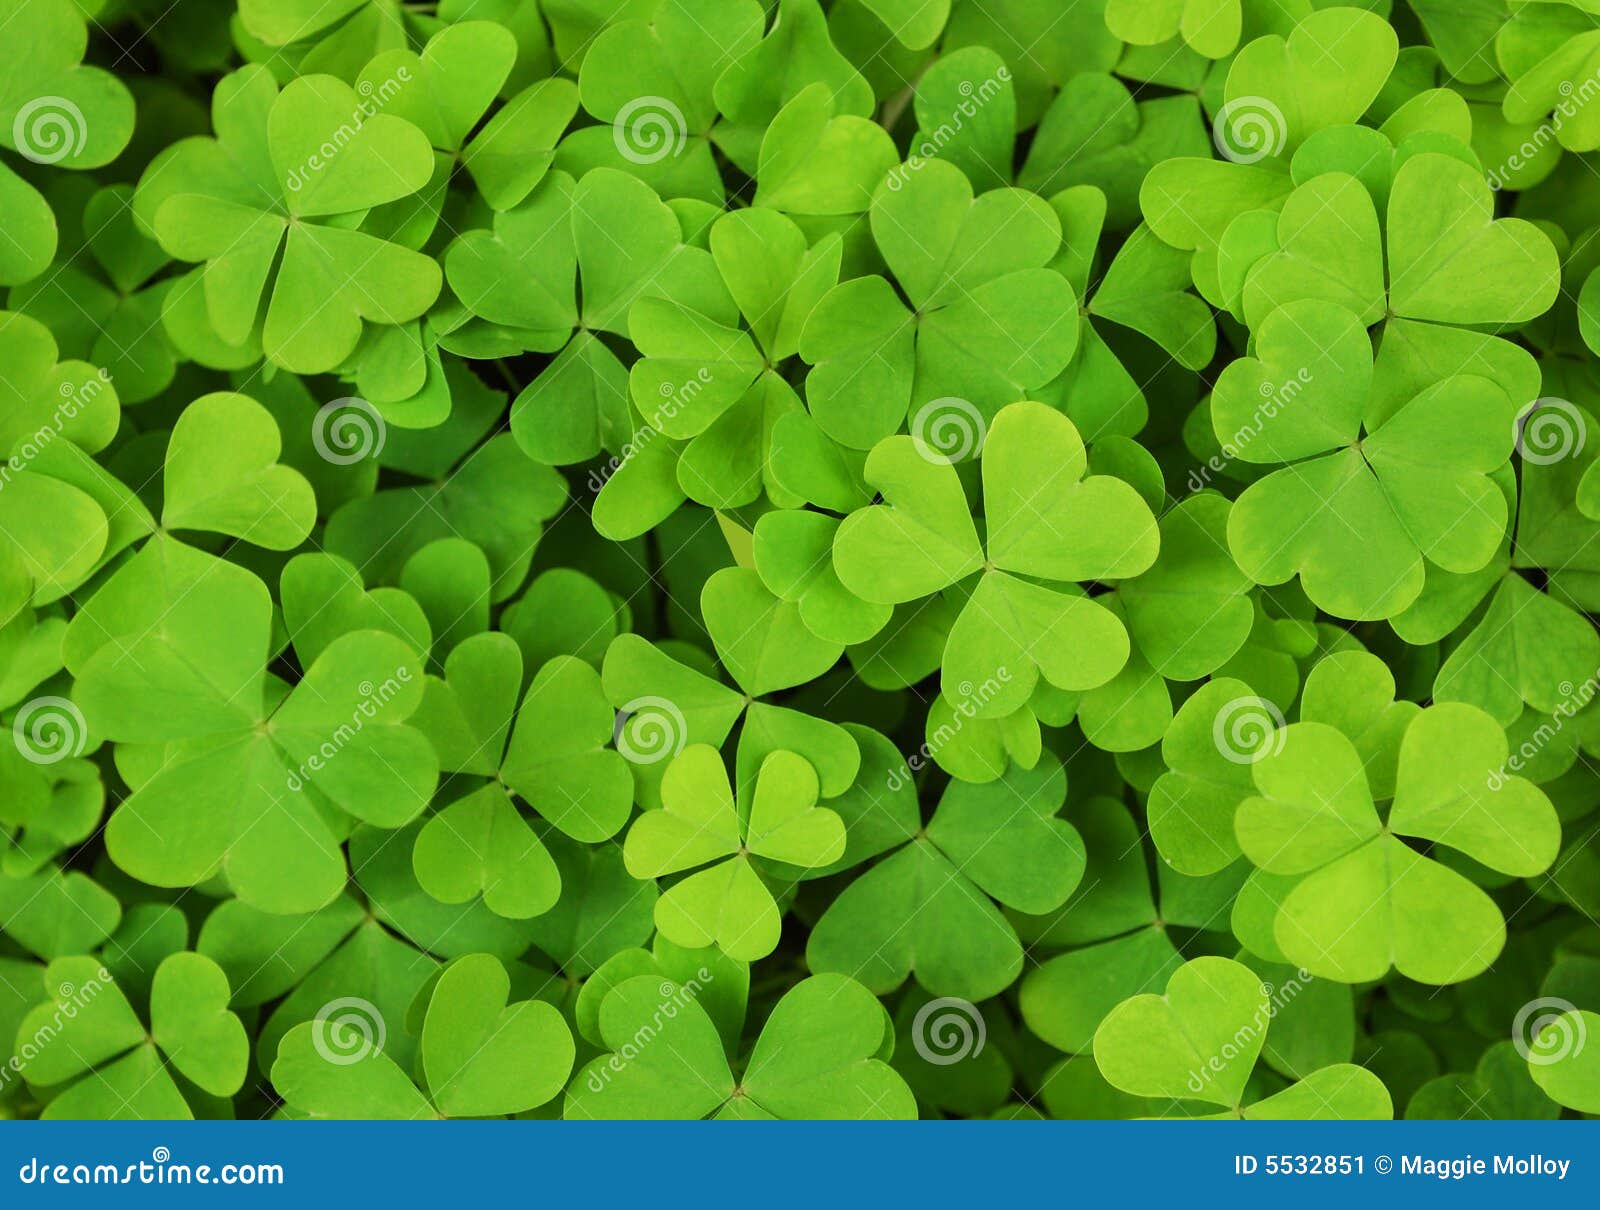 Irish Shamrock Clover Background Stock Image - Image: 5532851